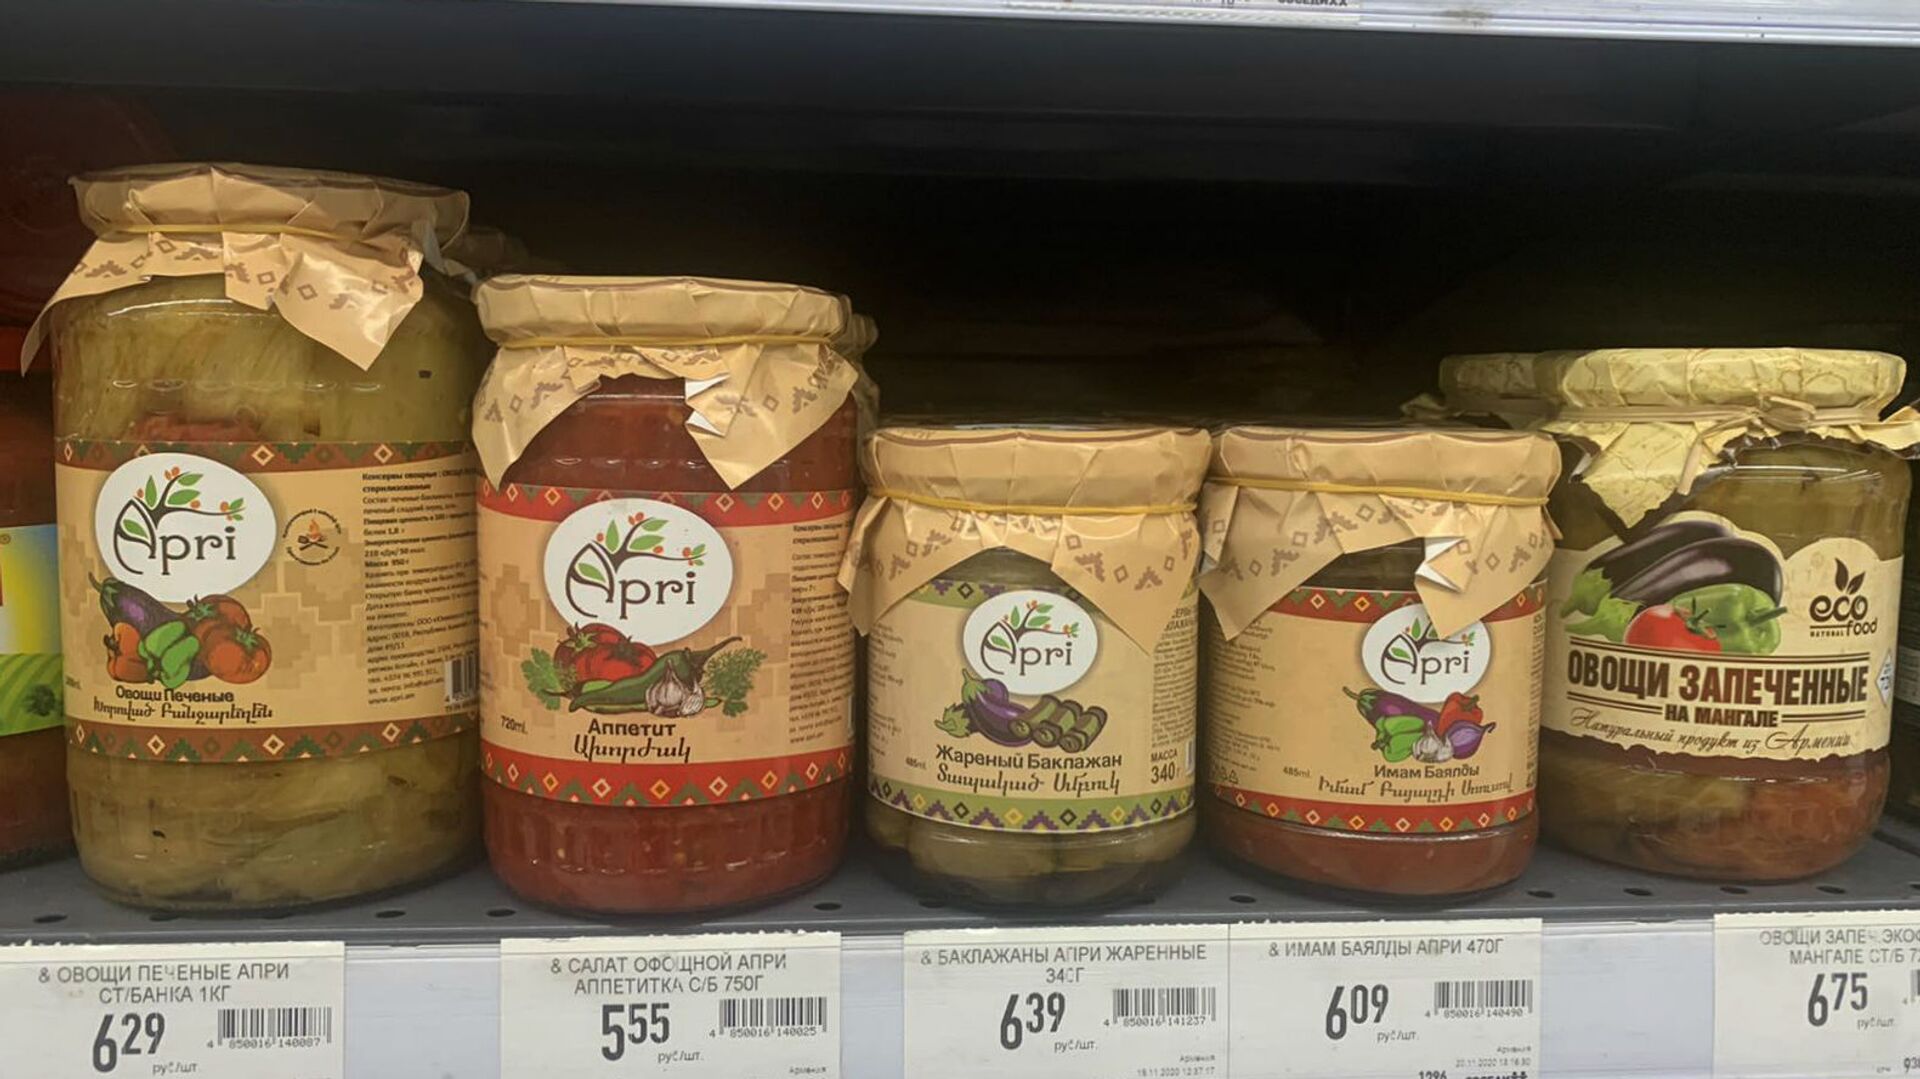 Армянские овощные консервы в  супермаркете в Беларуси - Sputnik Армения, 1920, 09.08.2021